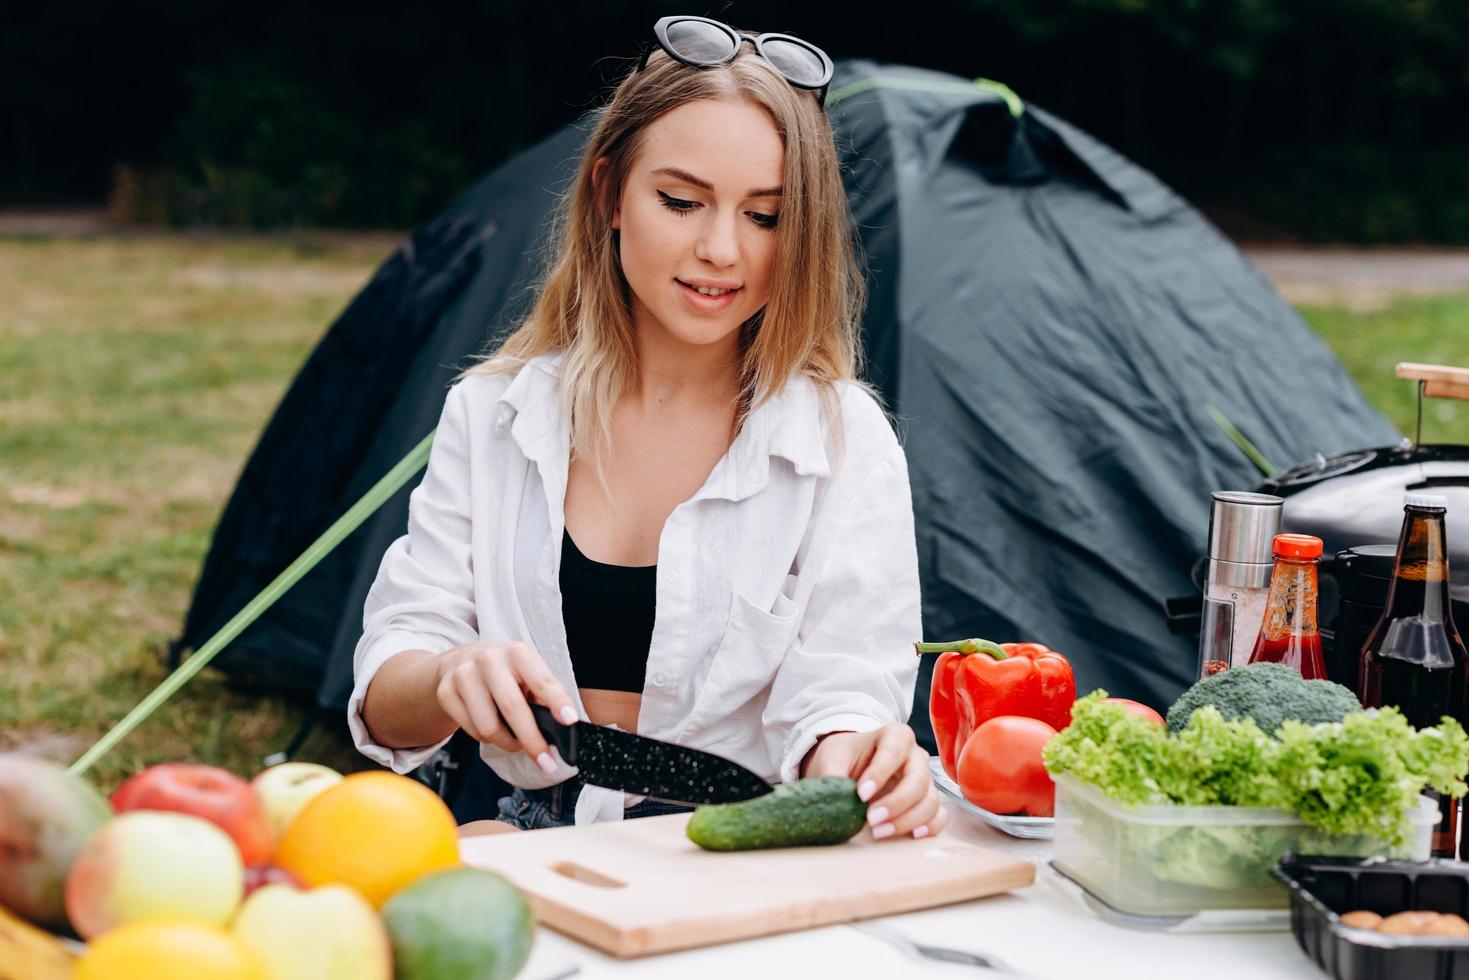 mujer preparando comida al aire libre en el camping foto